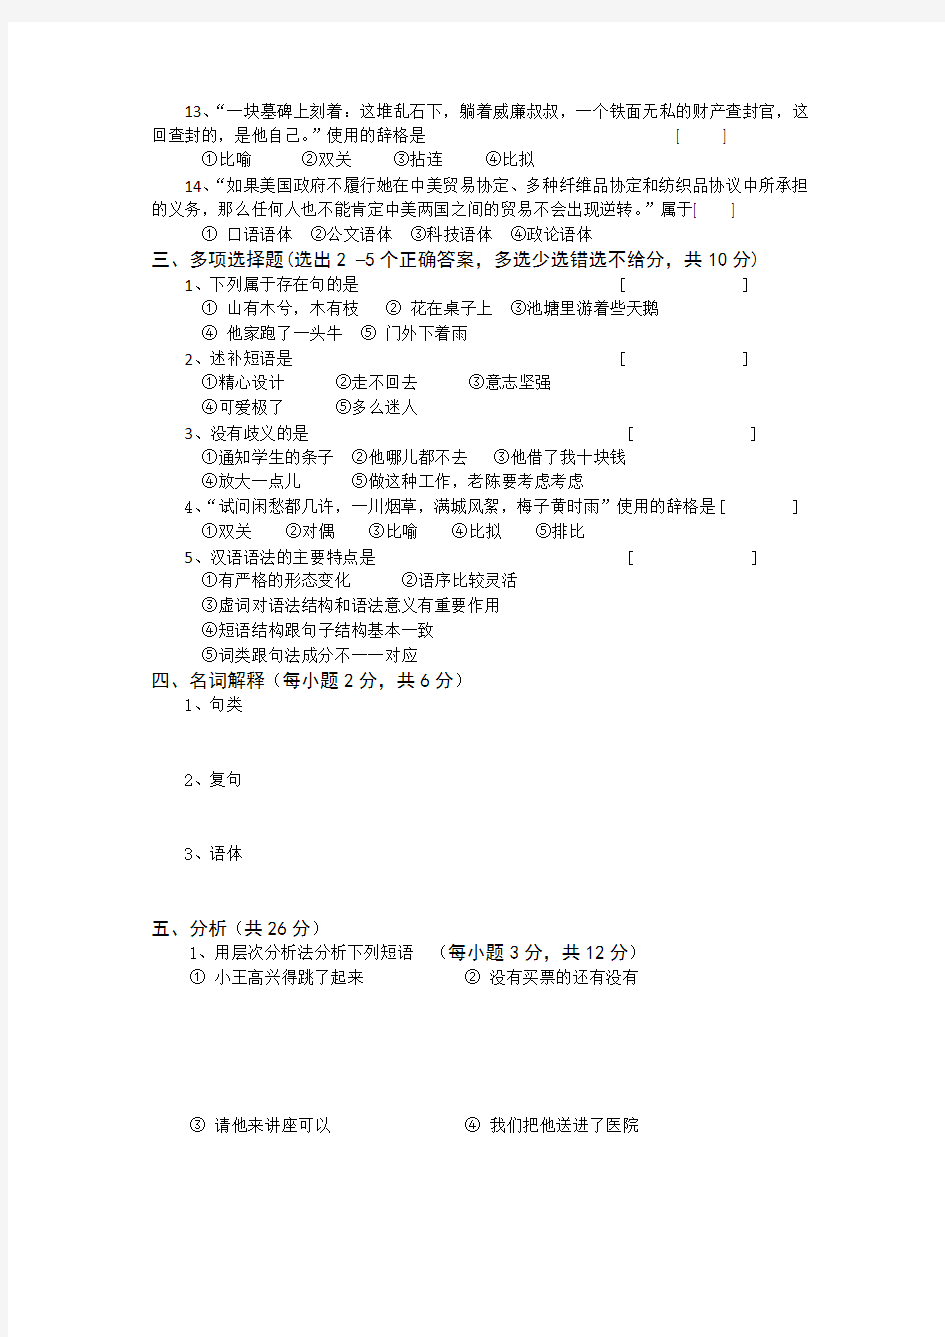 2019年春河北师范大学现代汉语考试题考试卷及答案解析(四)【最新版】